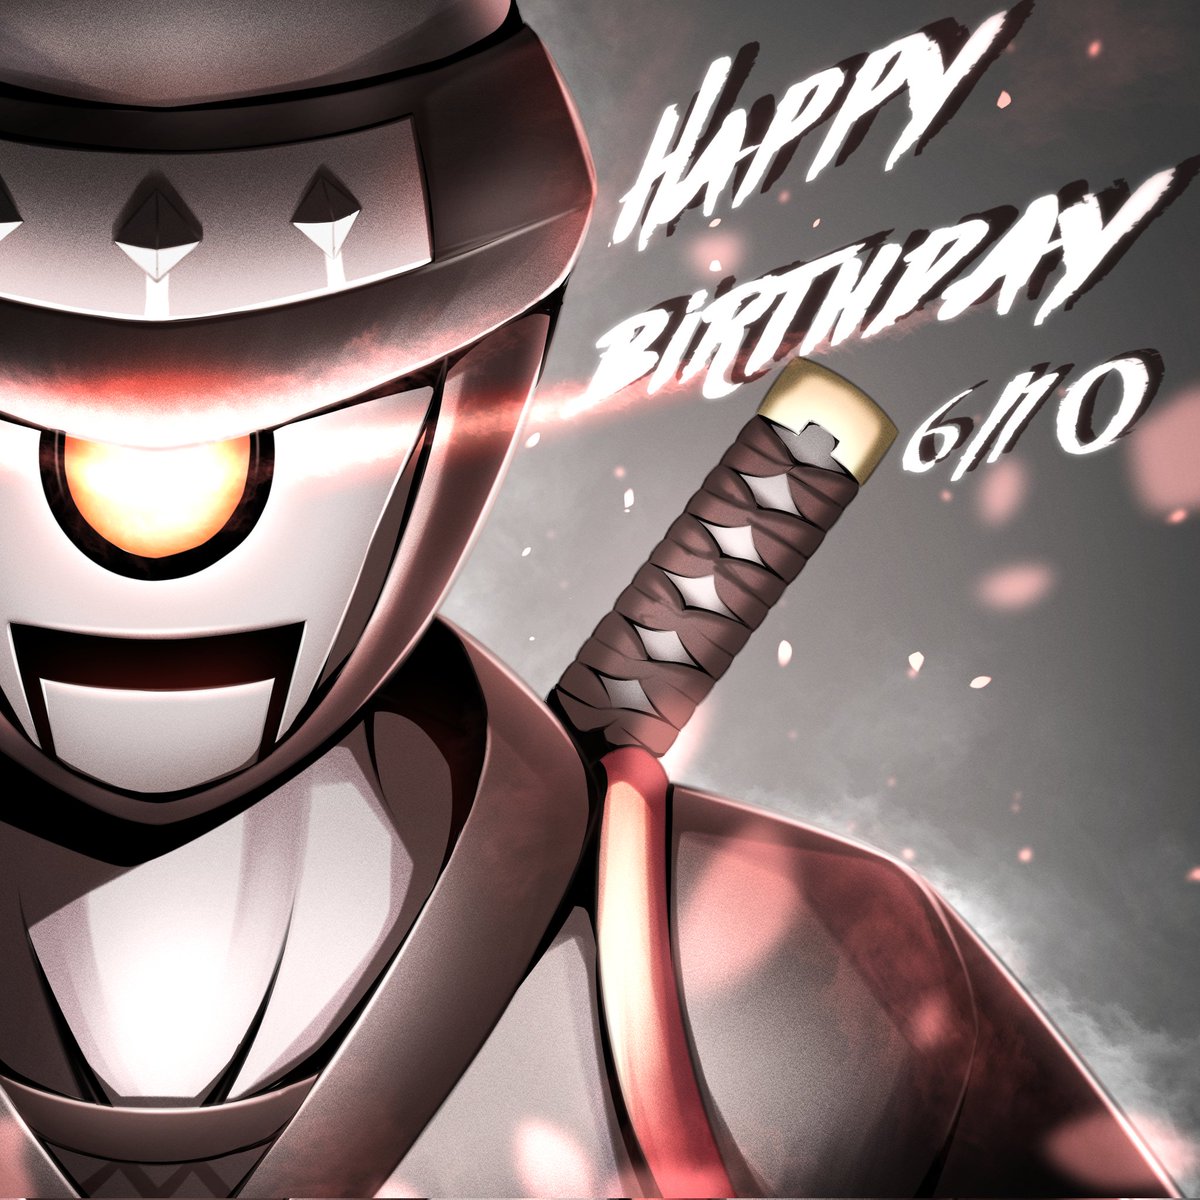 🎉HappyBirthday🎉
本日6月10日 ロボットの日は、断くんの誕生日です✨🥷✨ 
#CryptoNinja #ninjart